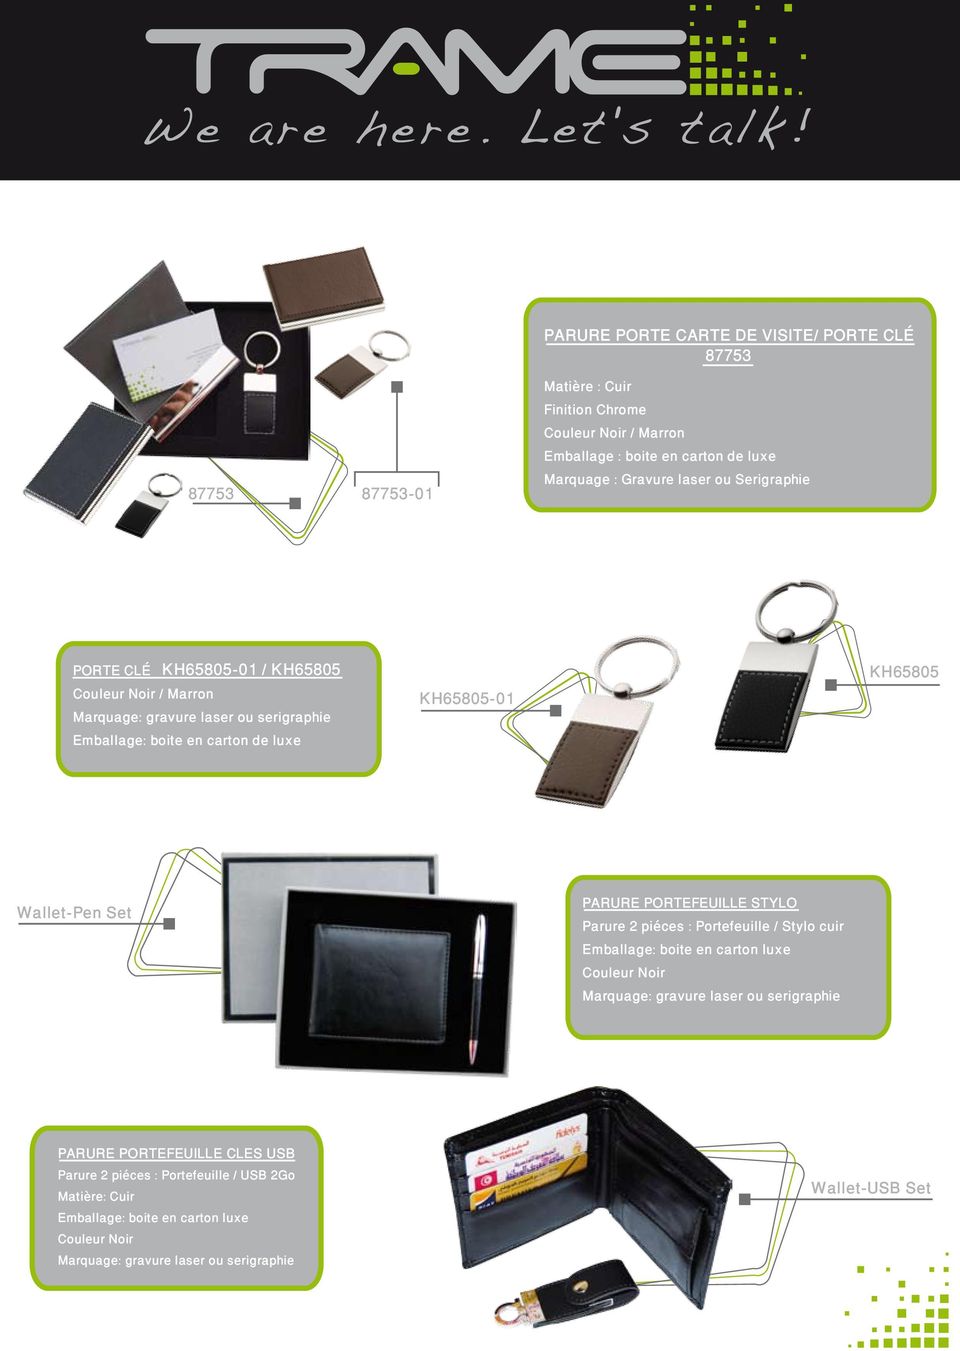 KH65805-01 KH65805 Wallet-Pen Set PARURE PORTEFEUILLE STYLO Parure 2 piéces : Portefeuille / Stylo cuir Emballage: boite en carton luxe